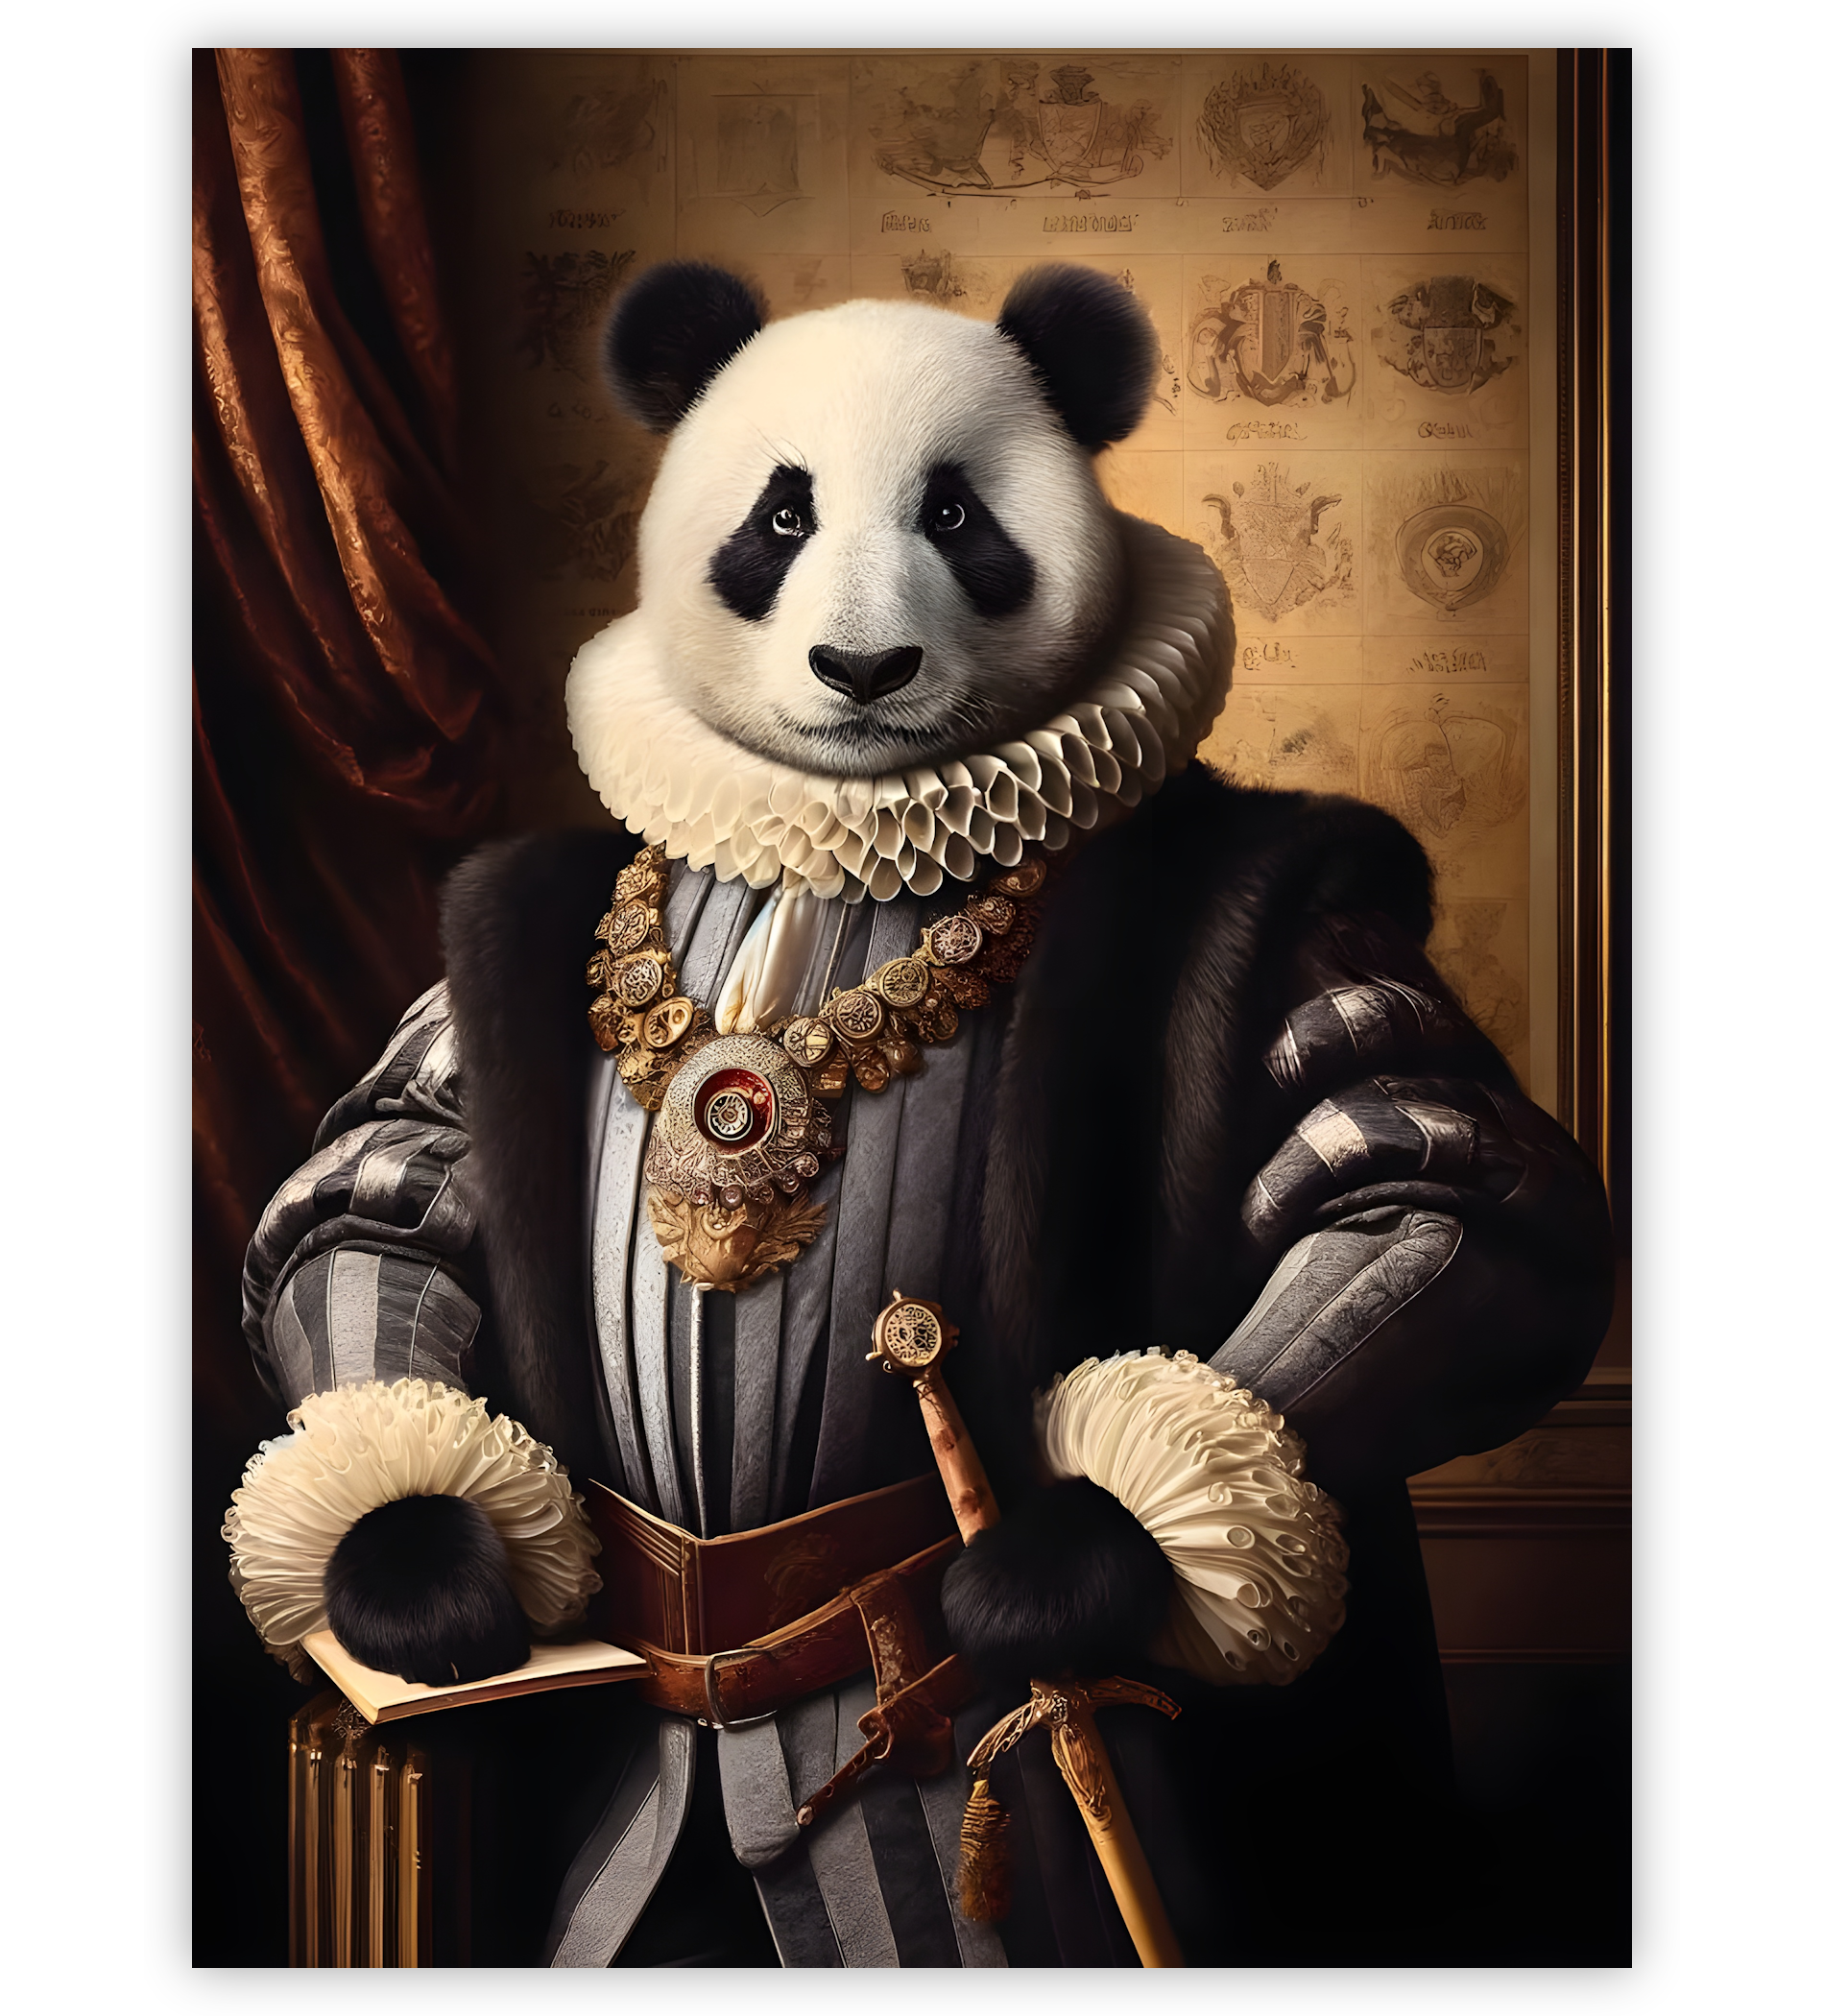 Poster, Wandbild von Panda als Aristokrat